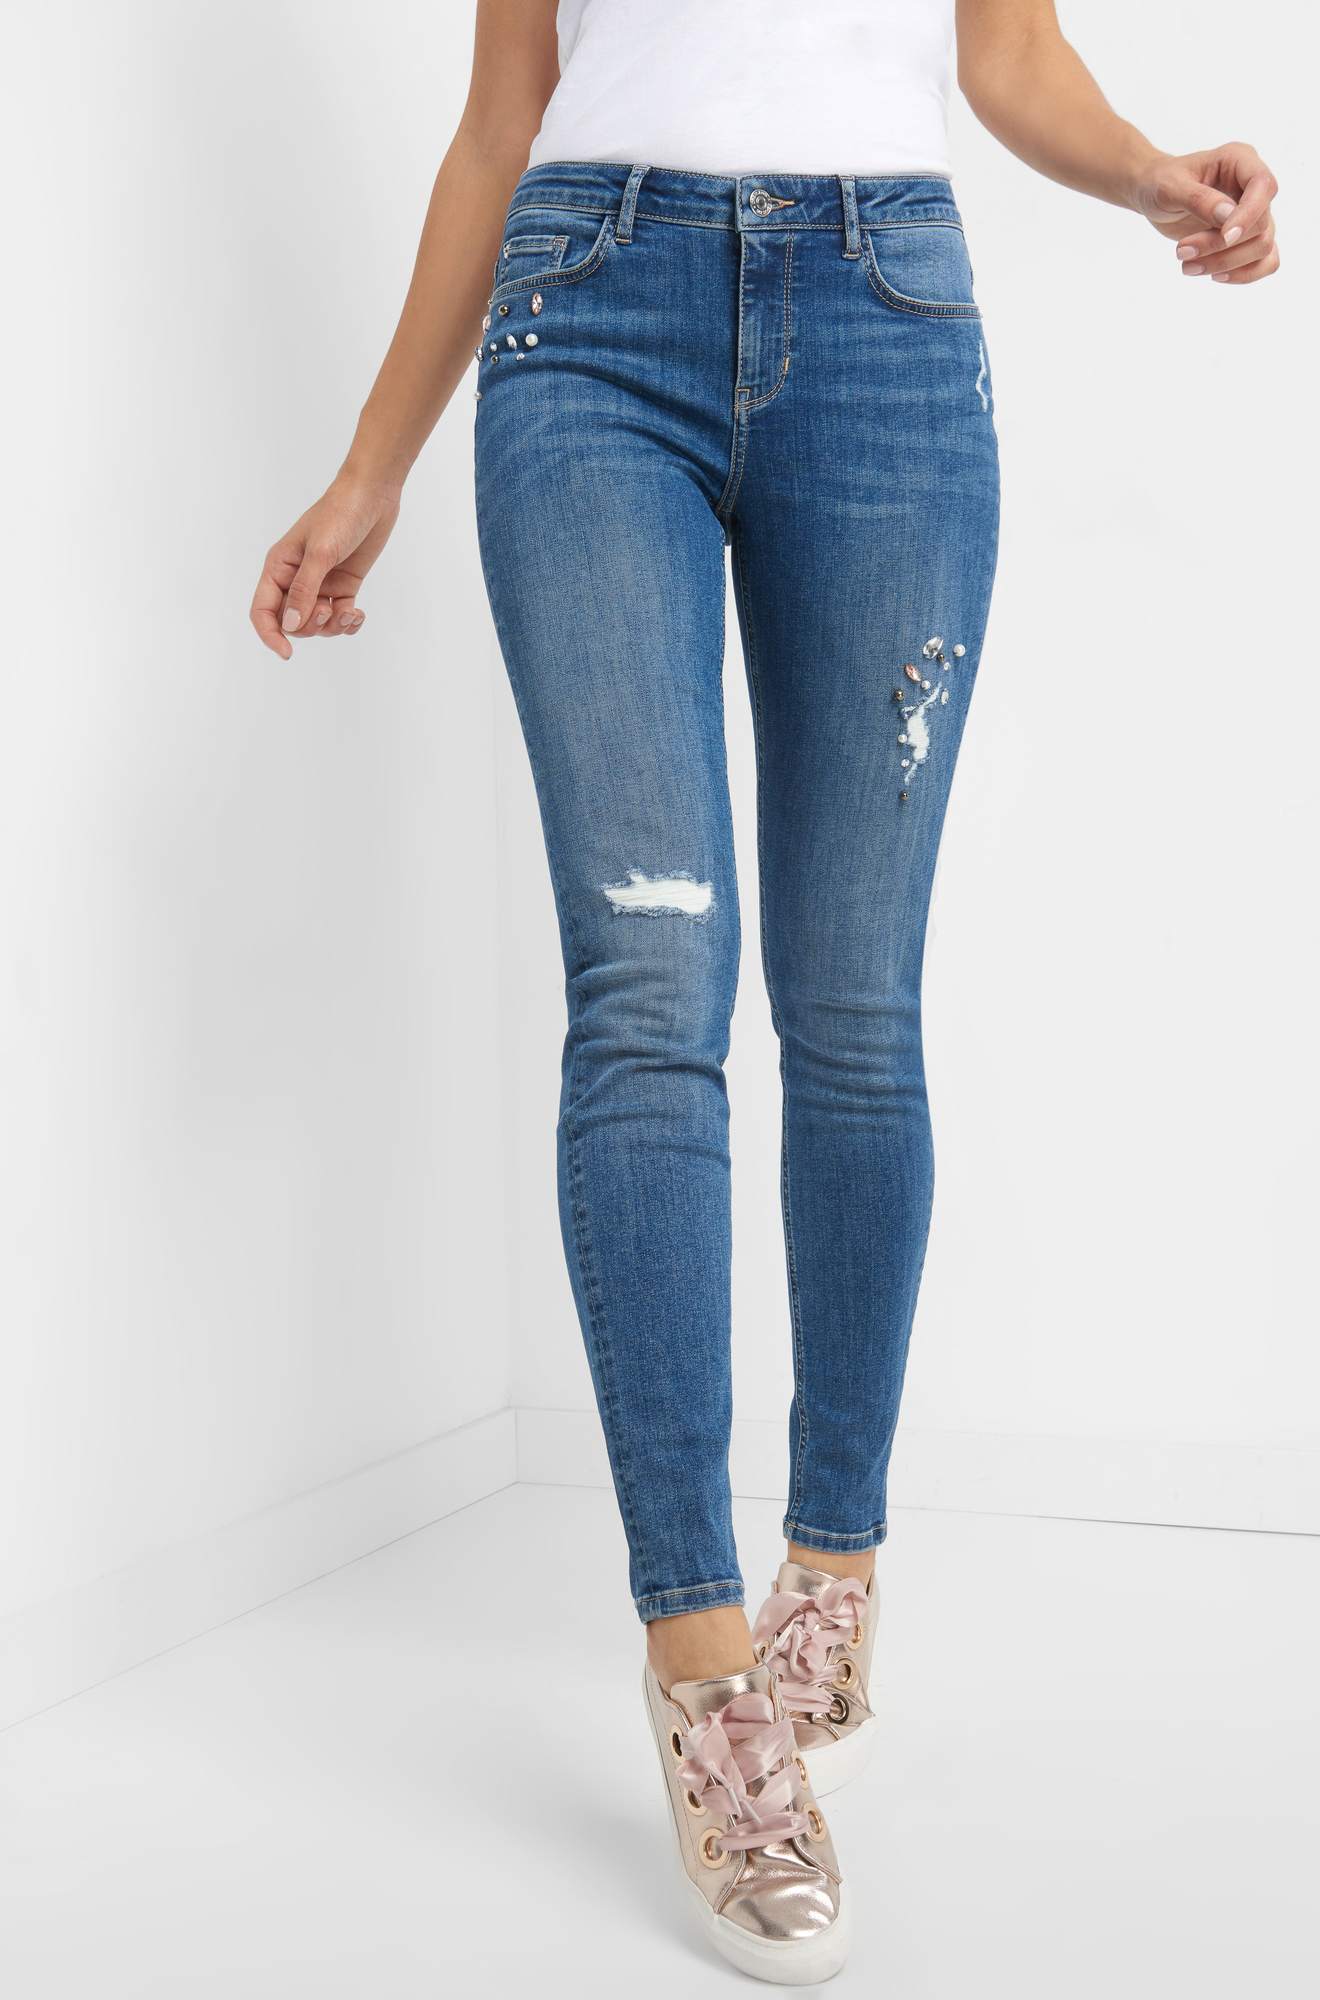 Jeans mit Glitzersteinen